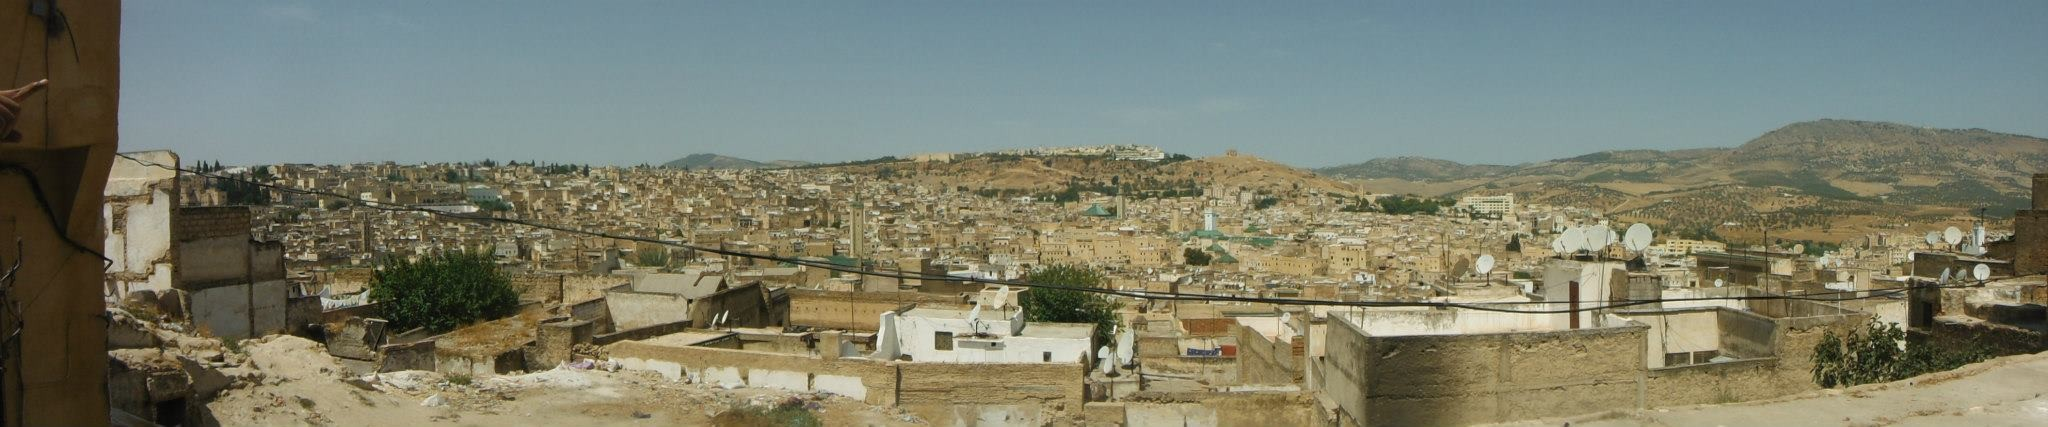 Visita de la ciudad: Palacio Real, la Kasbah de los Oudaya, Mausoleo de Mohamed V con su mezquita inacabada y la Torre de Hassan.